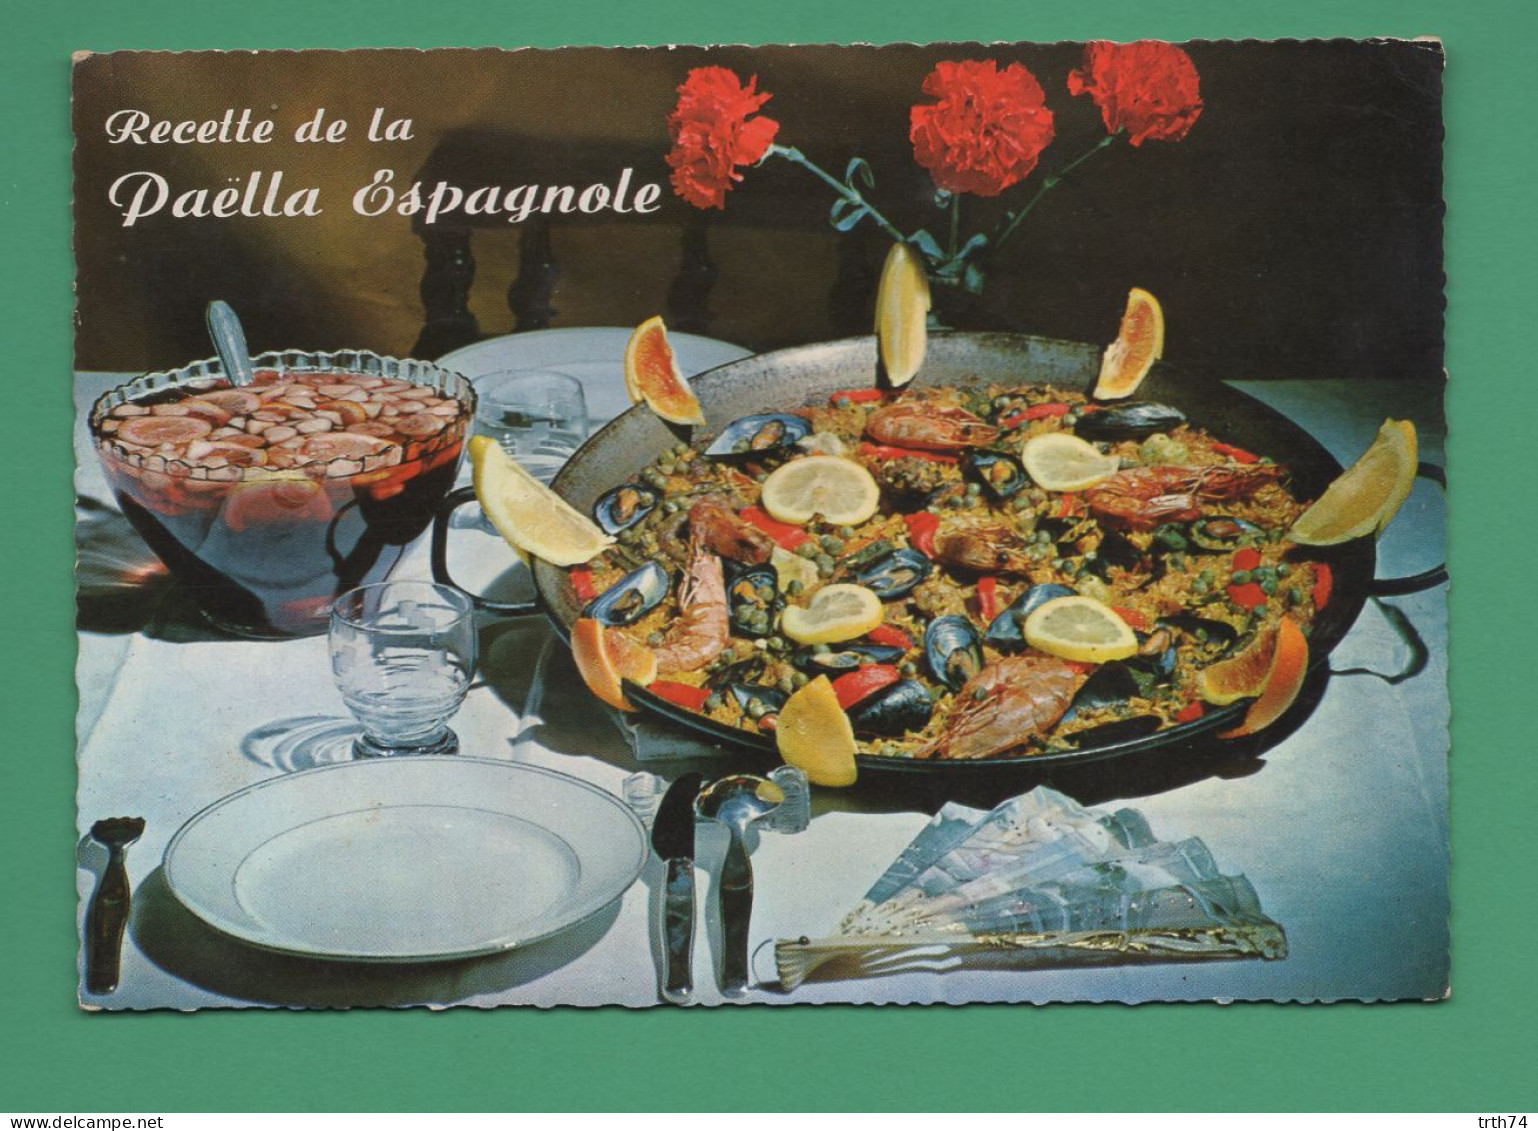 Recette De La Pella Espagnole ( Moules, Congre, Anguilles, Escargots Crevettes ) - Ricette Di Cucina